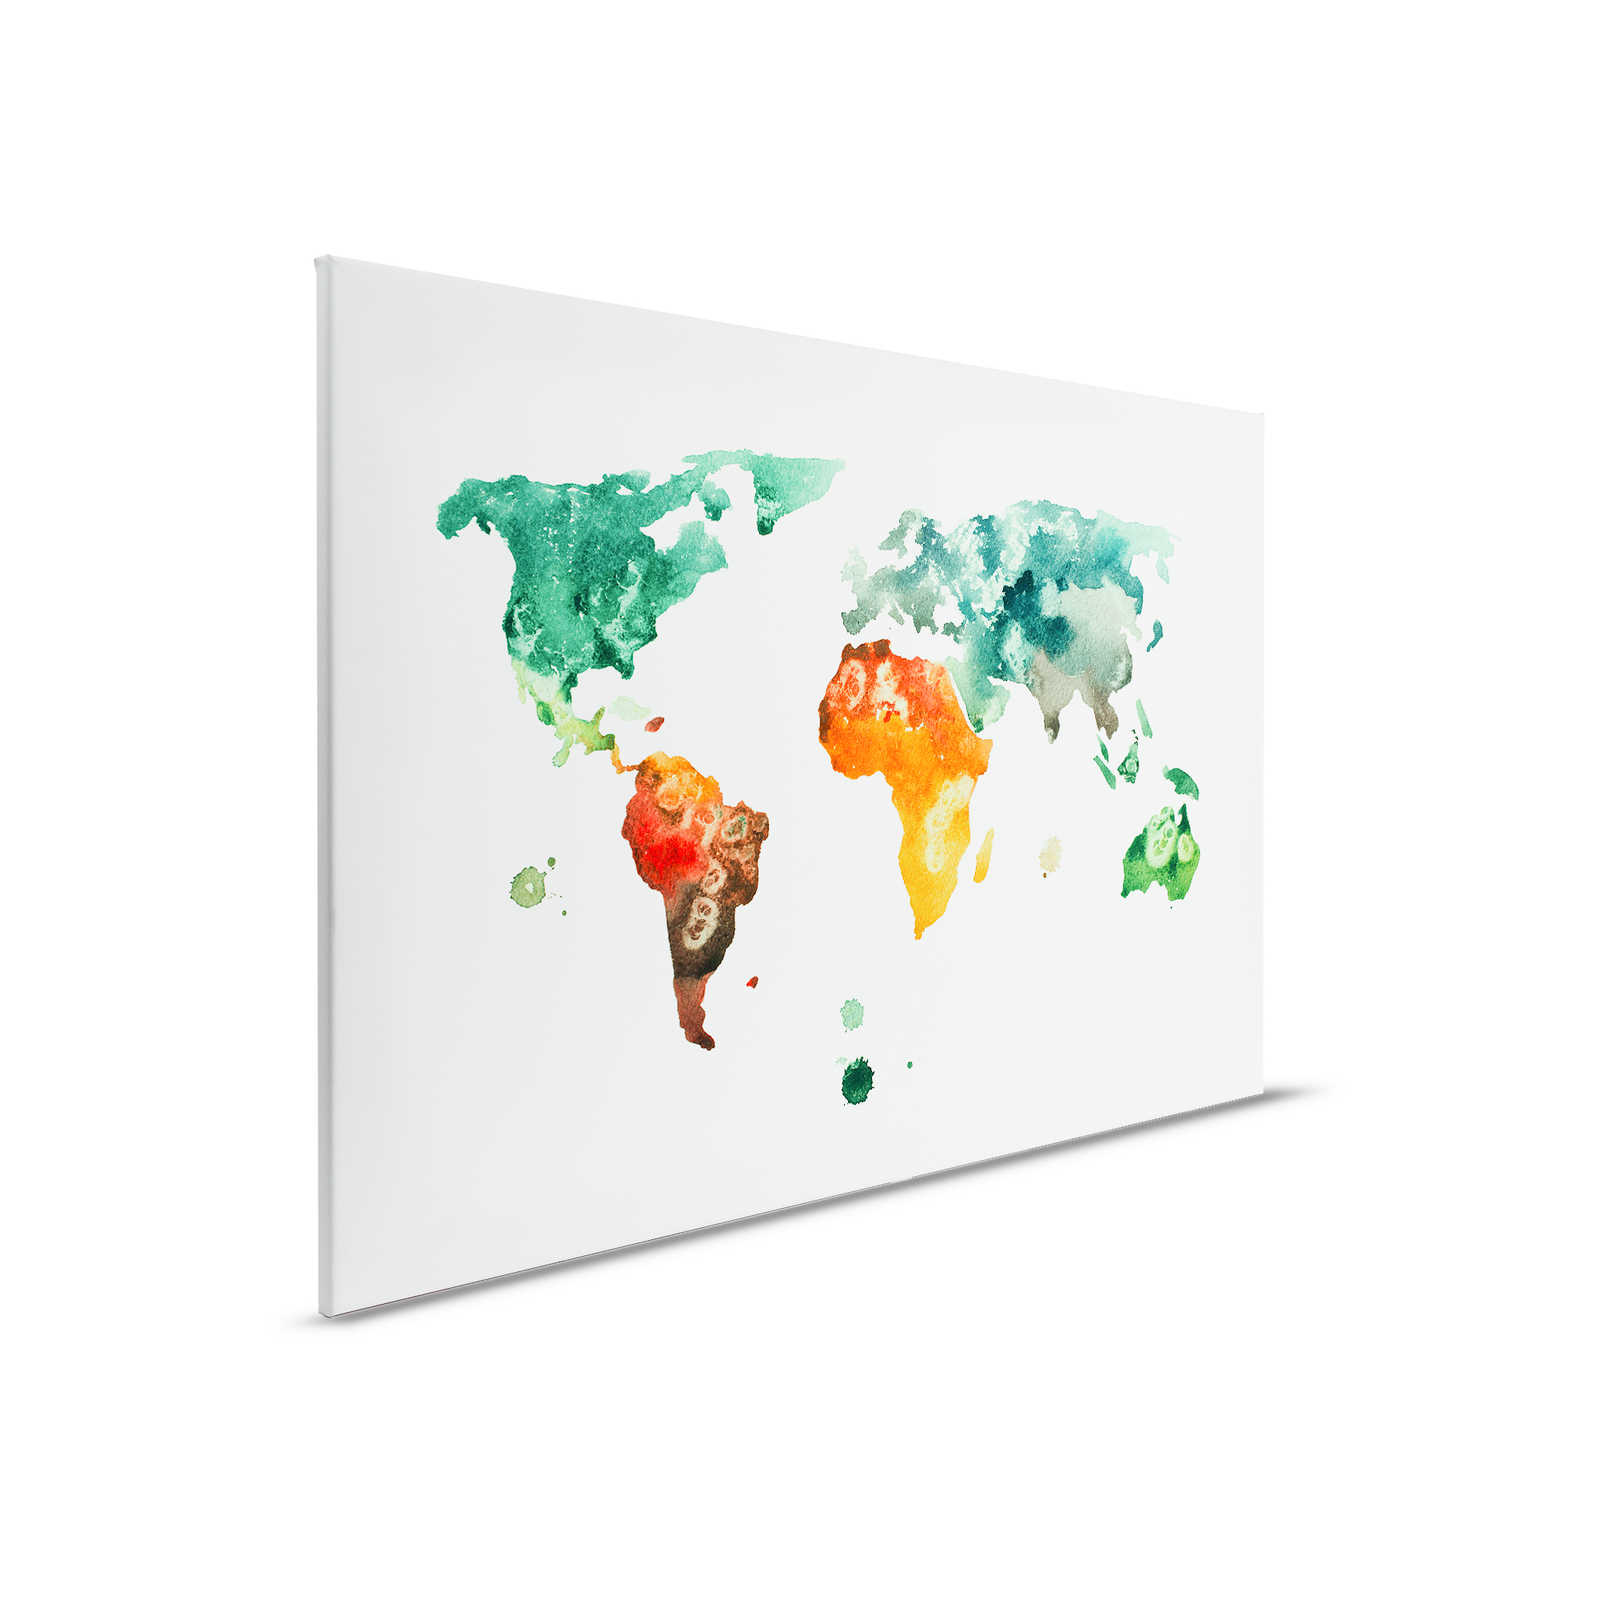 Mappa del mondo su tela acquerellata - 0,90 m x 0,60 m
